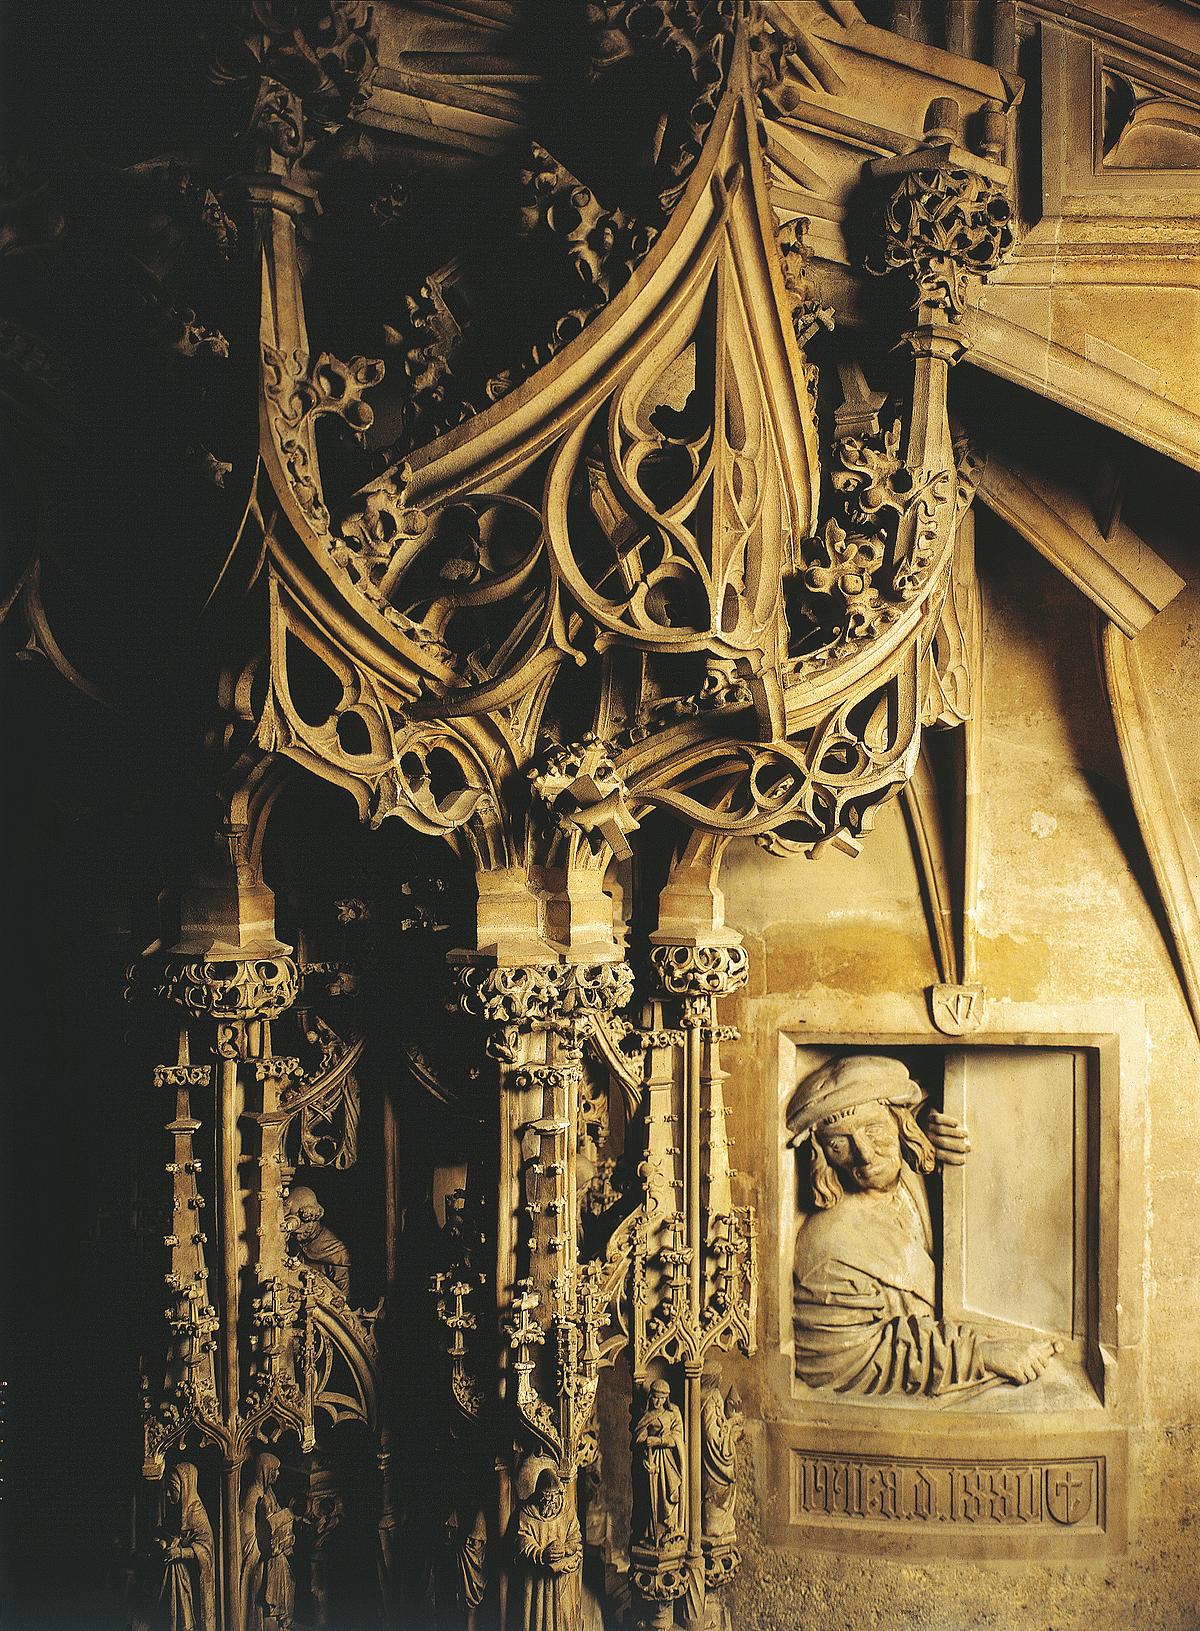 Nahaufnahme von gotischer Kanzel und einer Figur die darunter aus dem "Fenster" sieht.